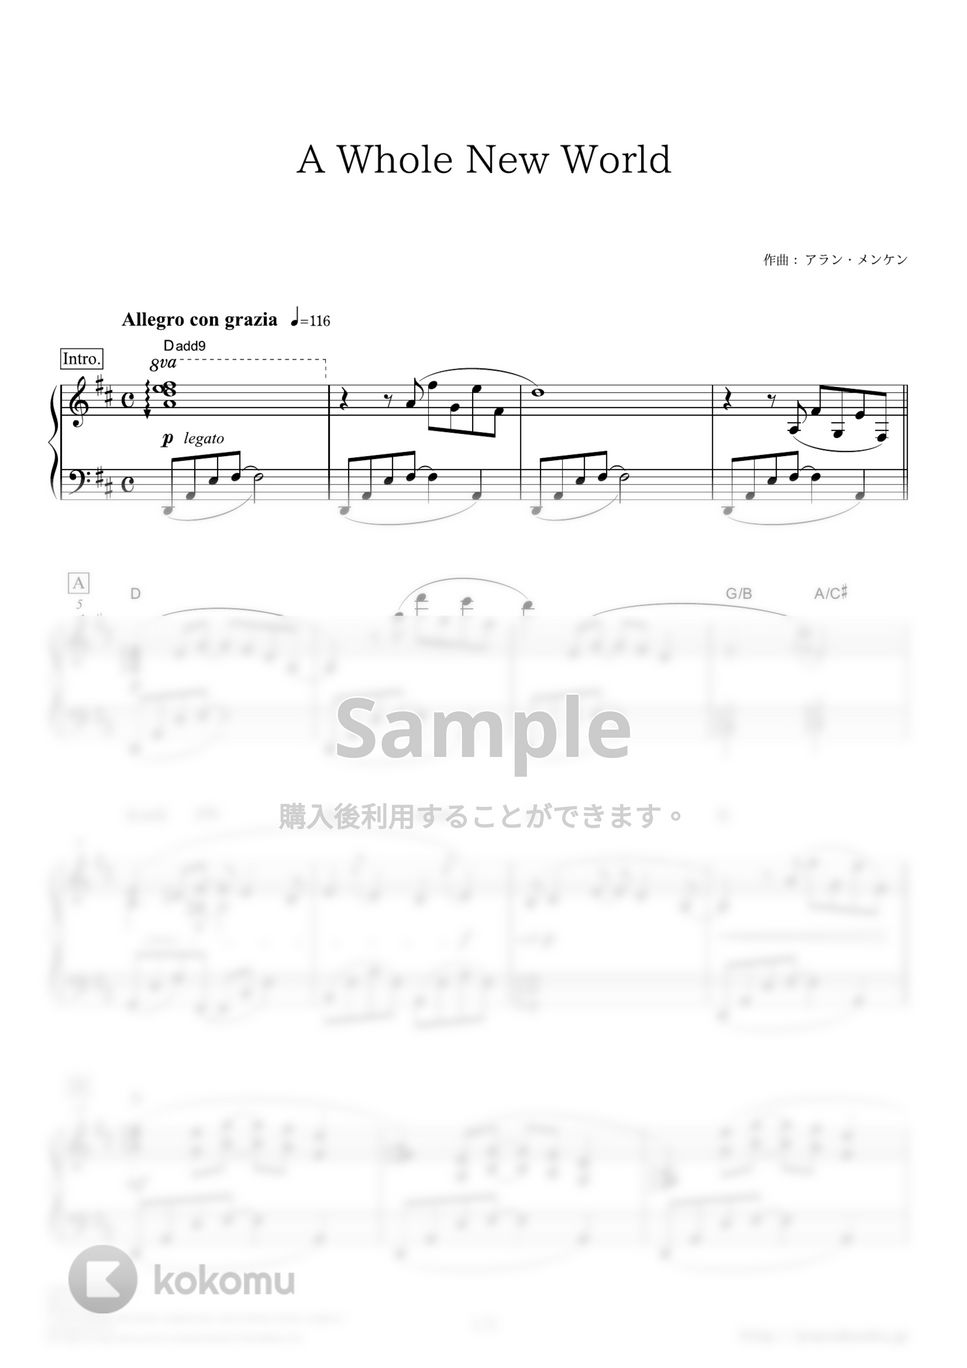 アラジン - ホール・ニュー・ワールド by ピアノの本棚